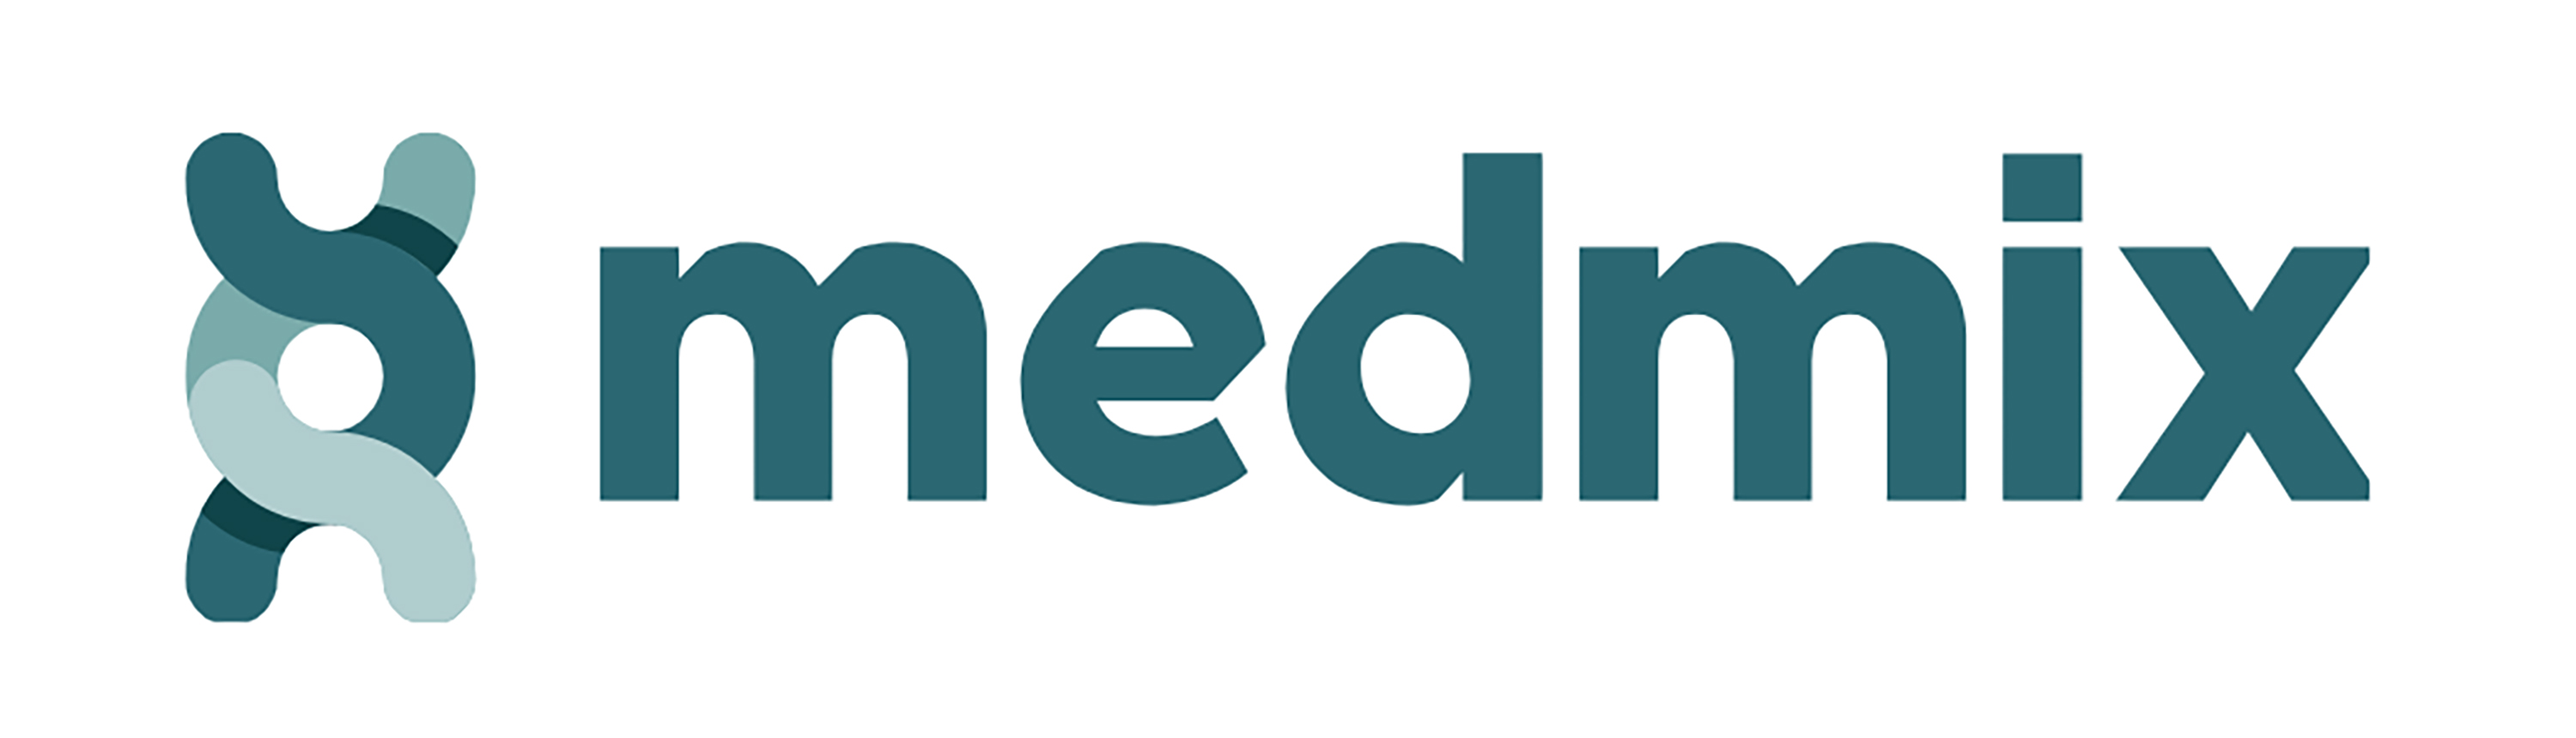 medmix setzt sein Know-how und seine technologische Kompetenz ein, um mit diversen Produktinnovationen und Marken an einer nachhaltigen Zukunft mitzuwirken.